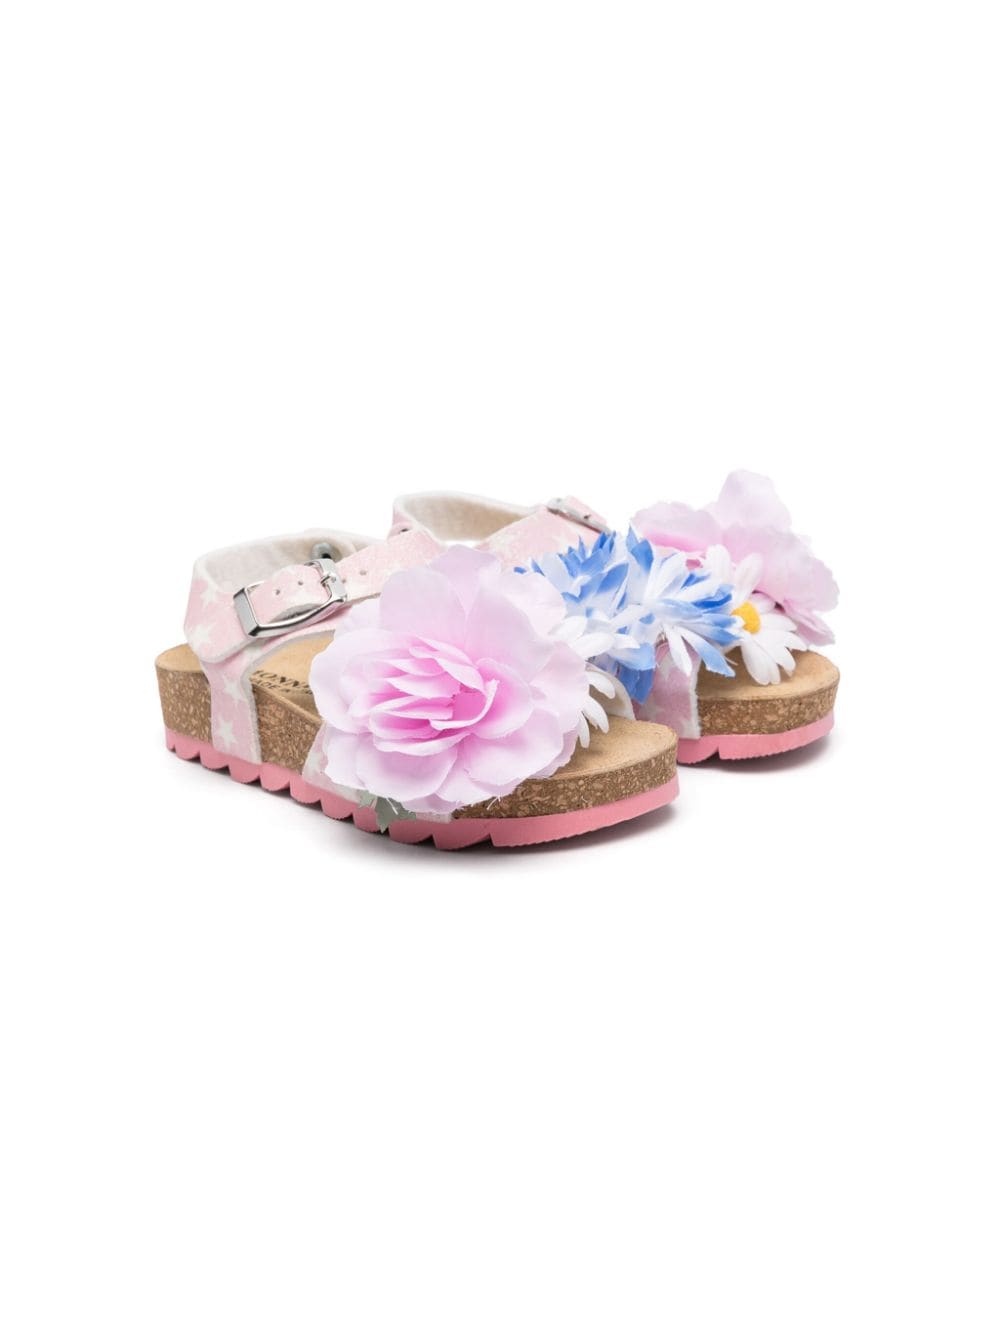 Sandali con applicazioni a fiore - Rubino Kids